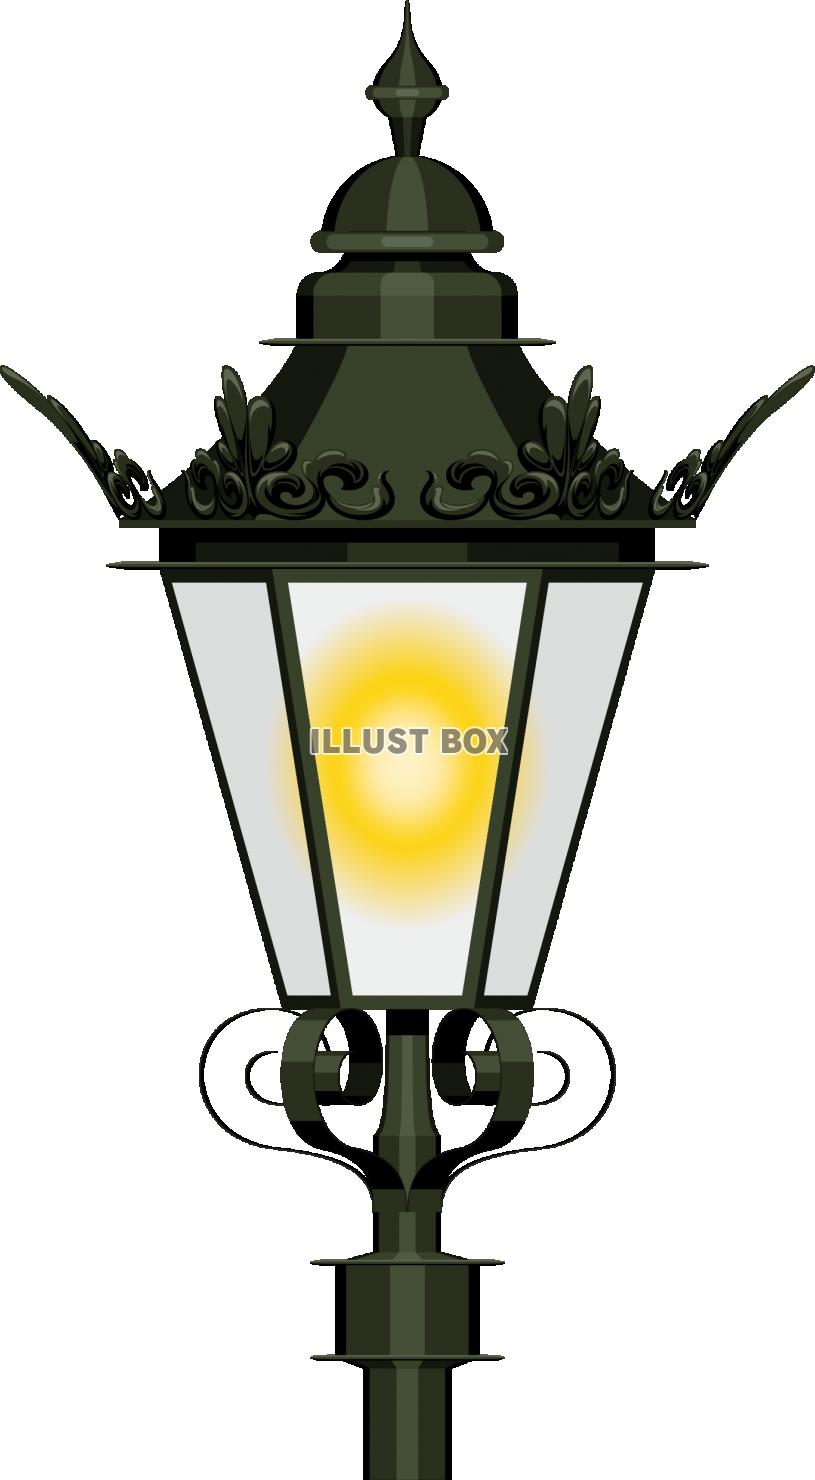 レトロで西洋風な街灯のガス燈